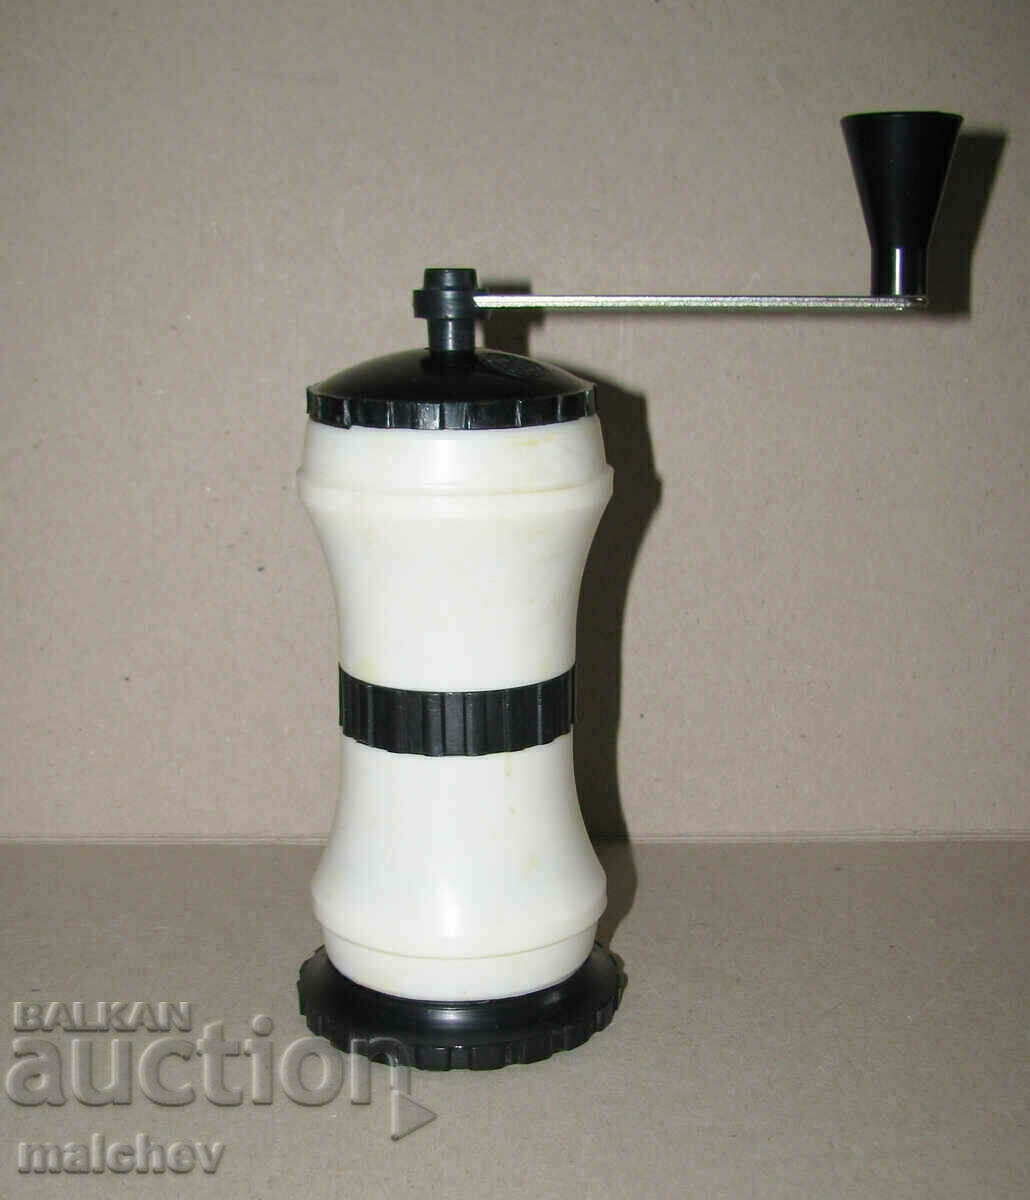 Coffee grinder black pepper spice grinder, excellent